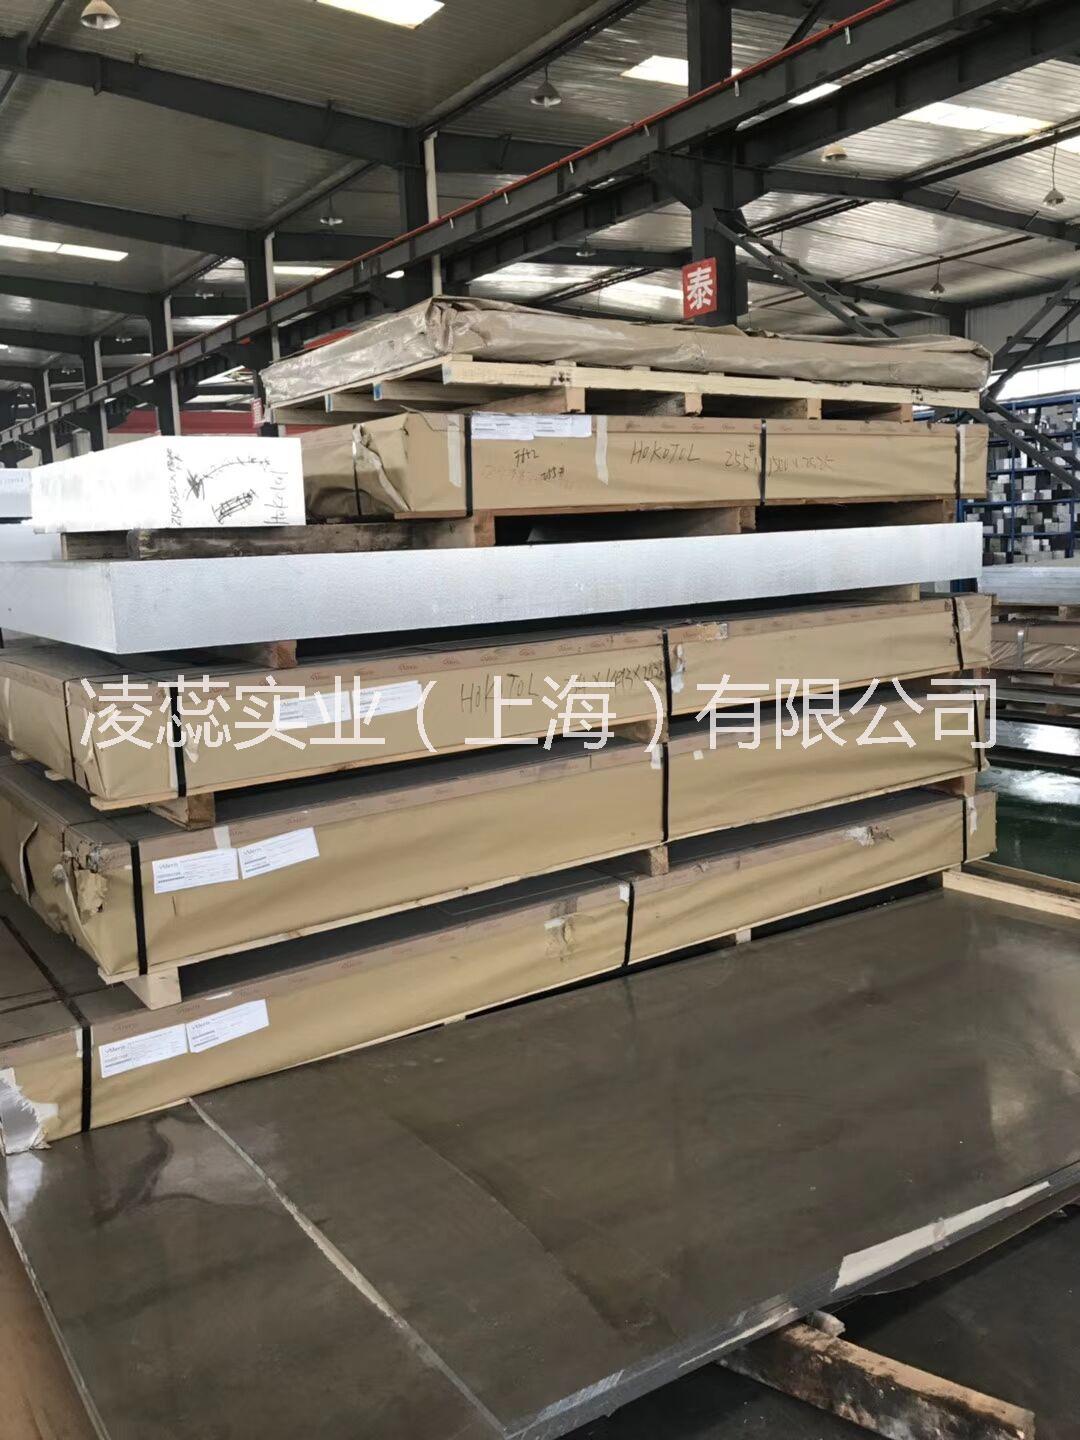 上海市超厚铝板厂家上海超厚铝板现货6061 5052 5083 7075超厚铝板供应 锻打铝合金板 铝平板厂家 铝板价格